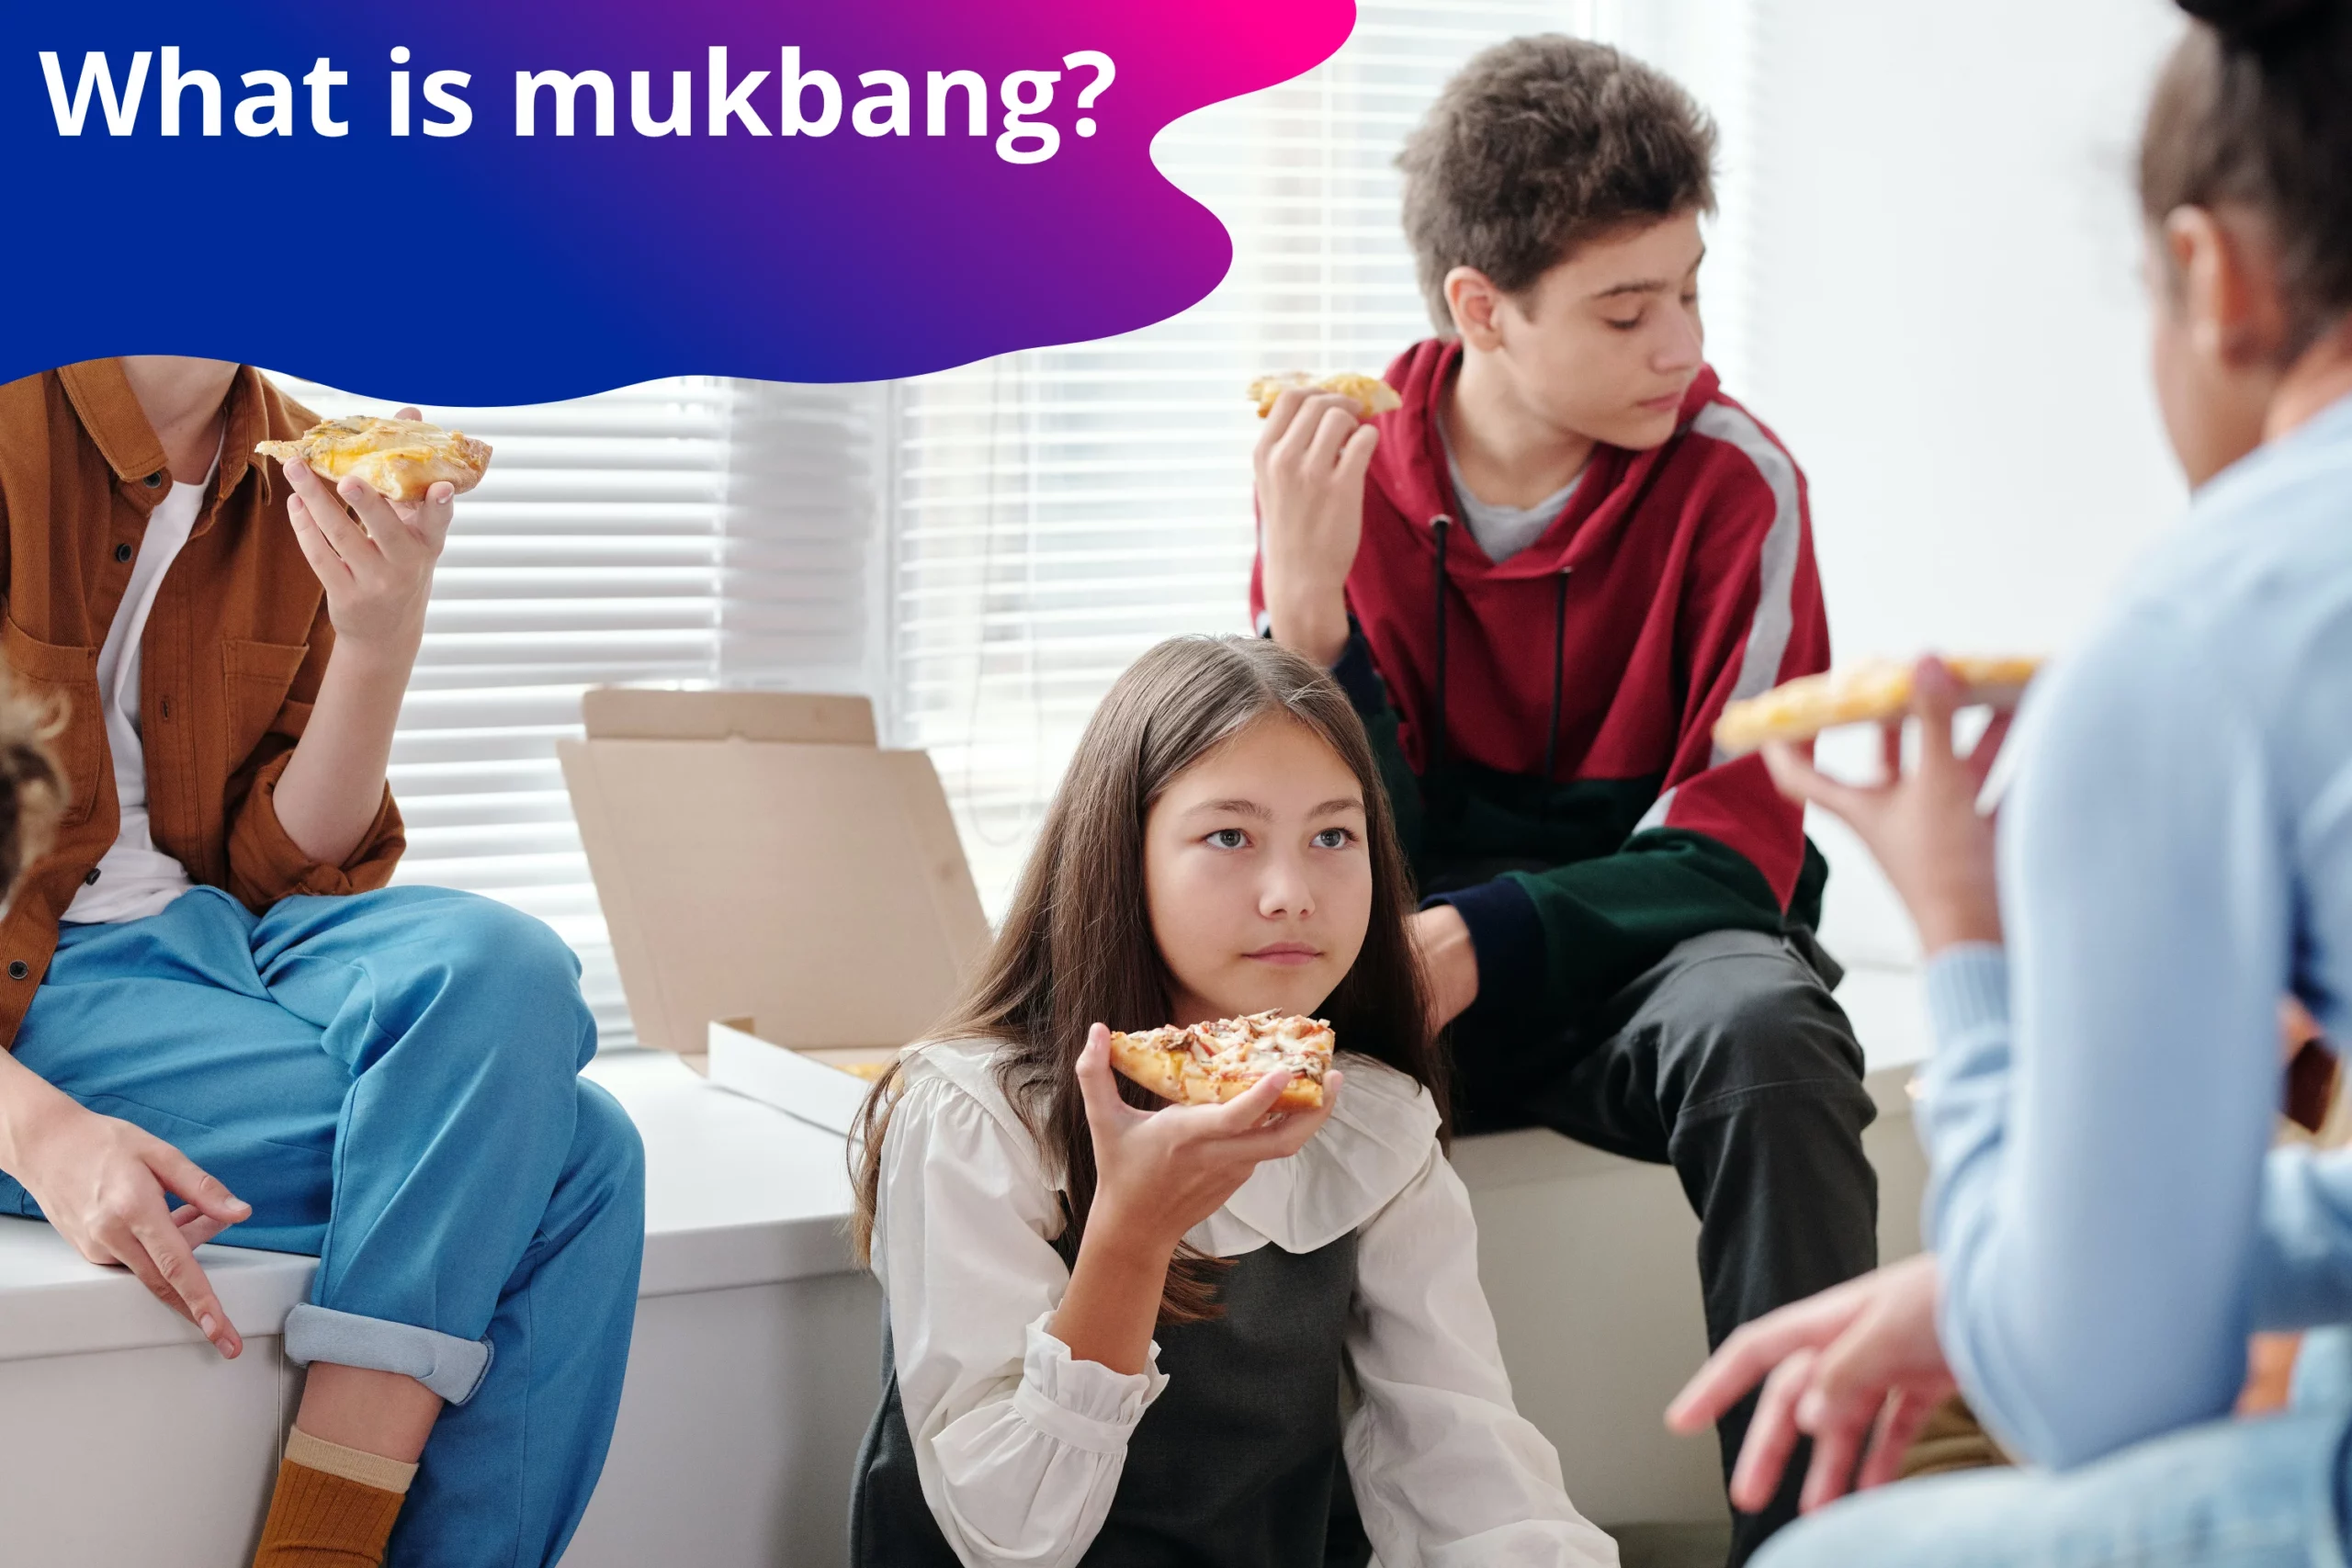 What is mukbang?